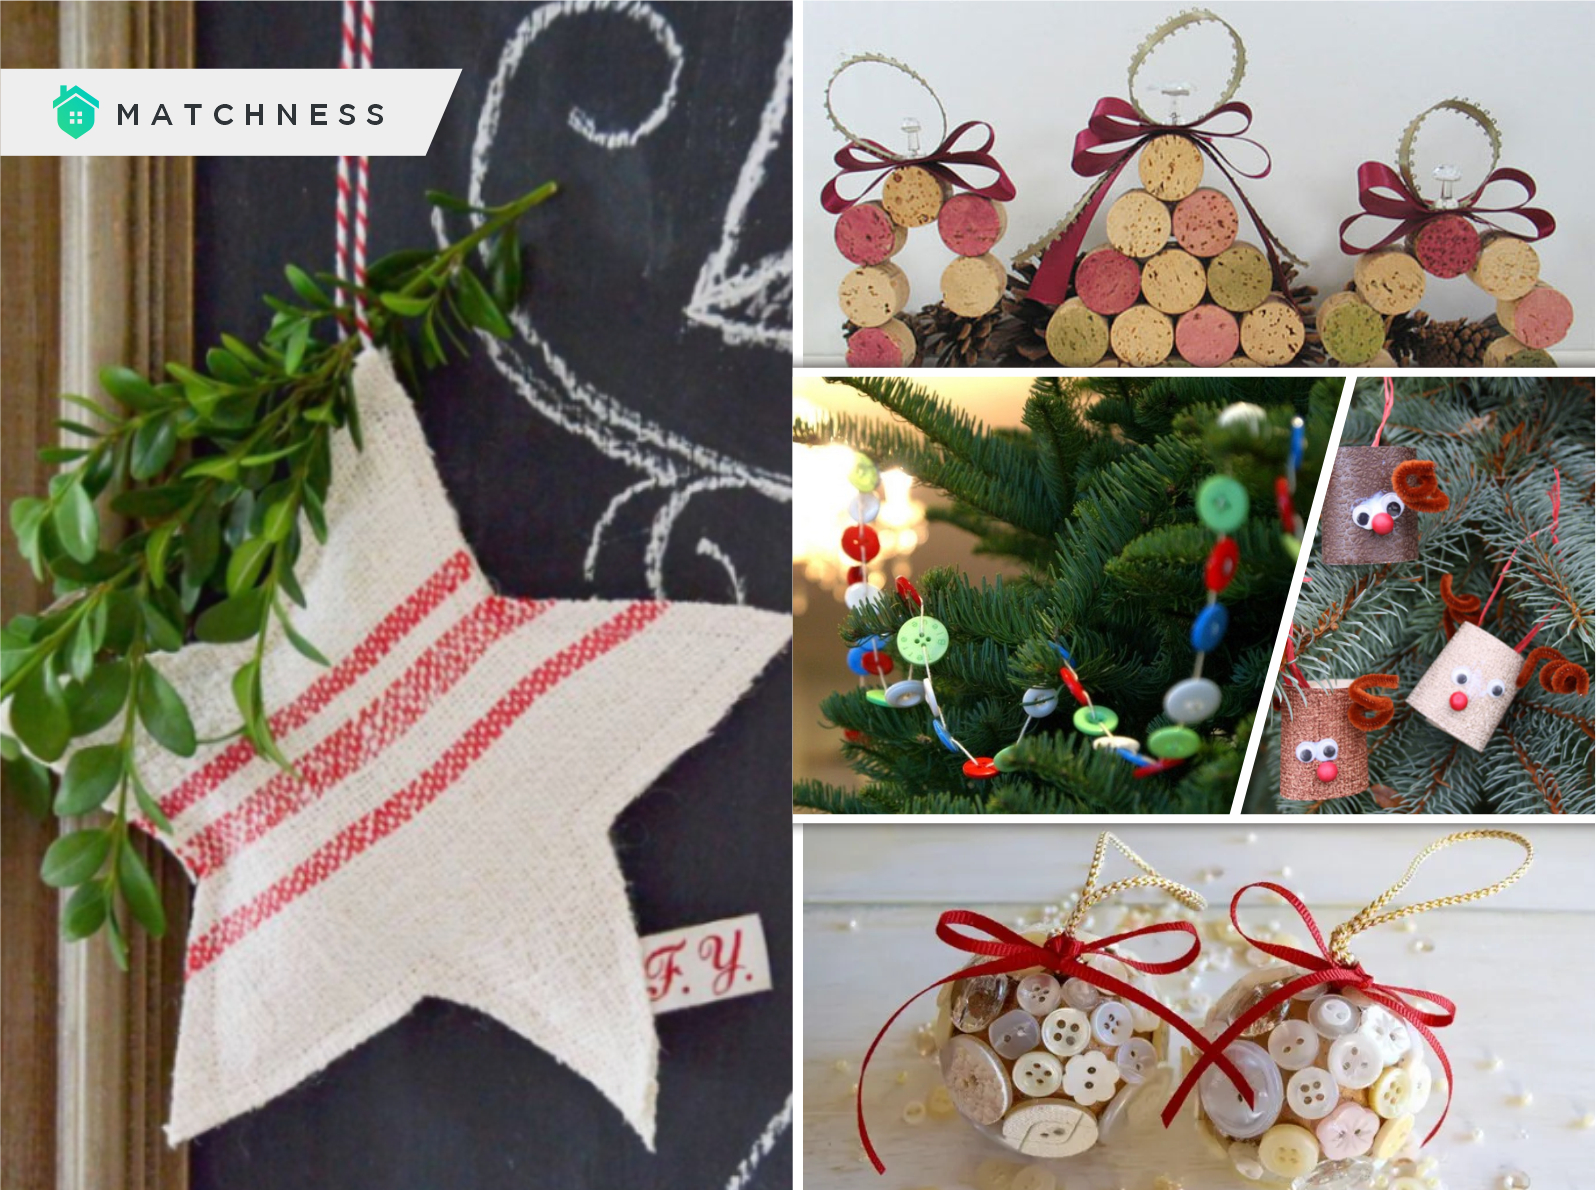 25 Varied Christmas Ornament Ideas - Matchness.com